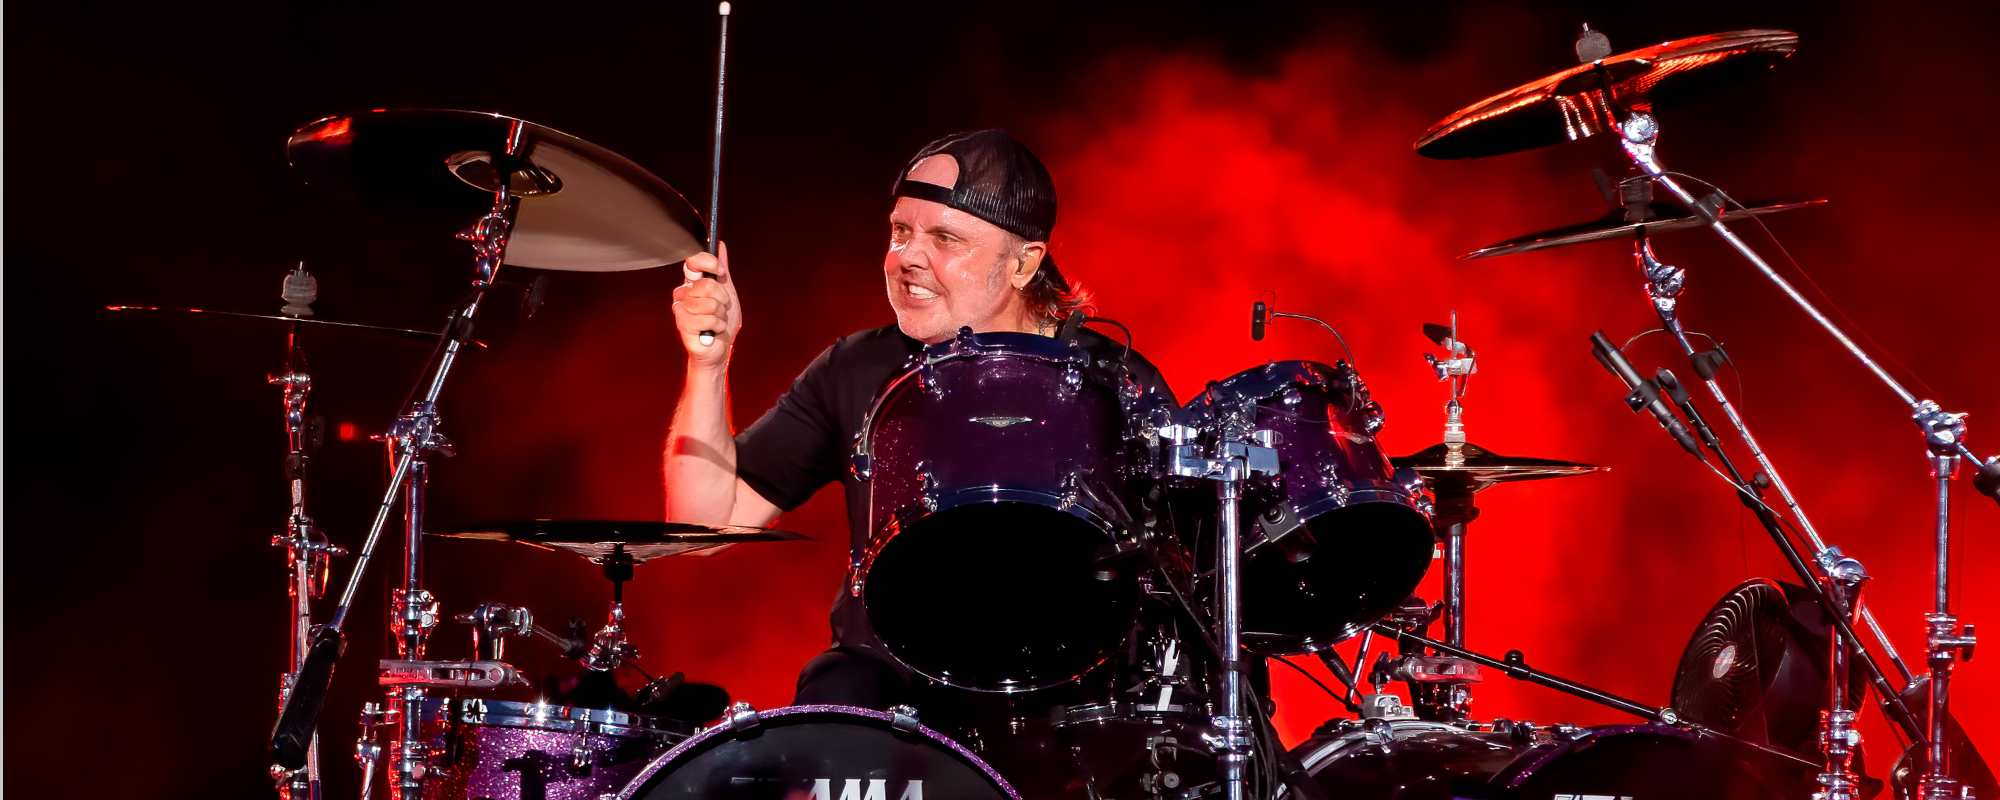 Lars Ulrich révèle que Deep Purple l'a aidé à réaliser sa carrière dans la musique